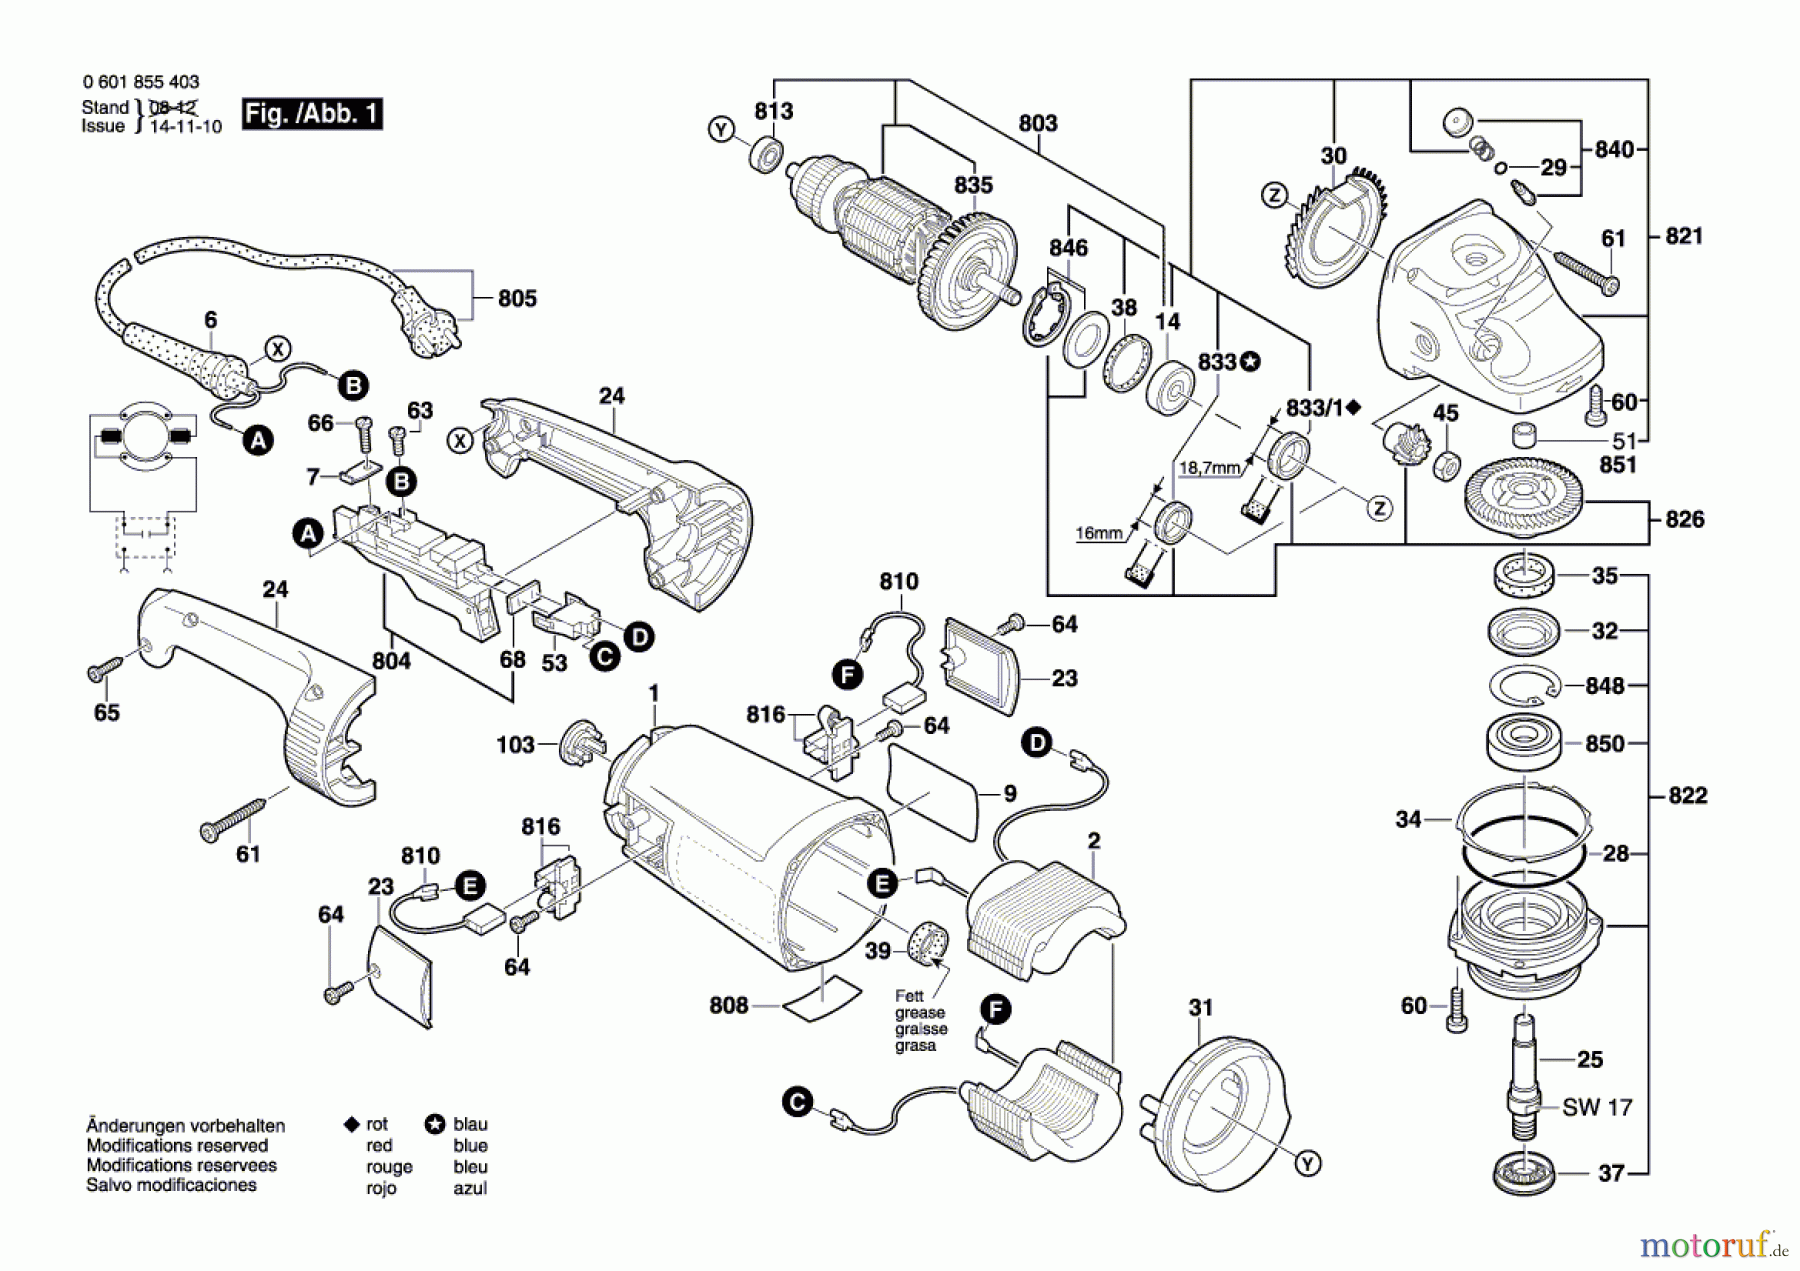  Bosch Werkzeug Winkelschleifer GWS 26-180 H Seite 1